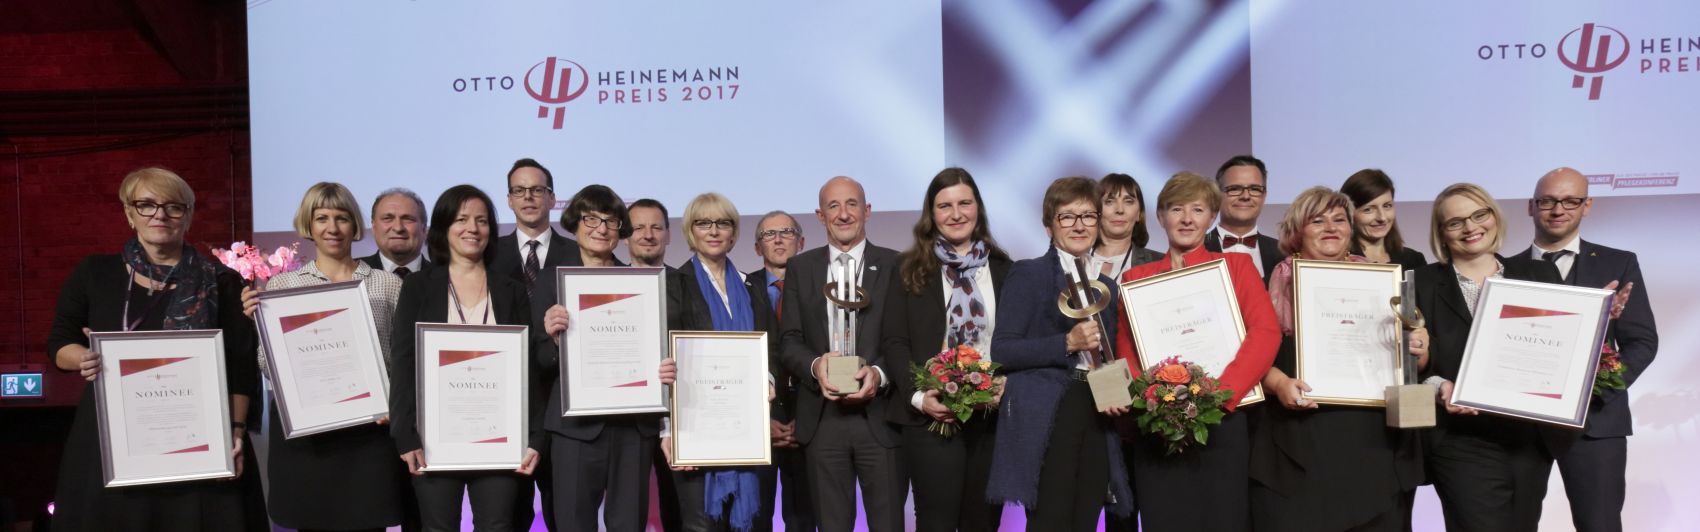 Otto-Heinemann-Preisträger 2017